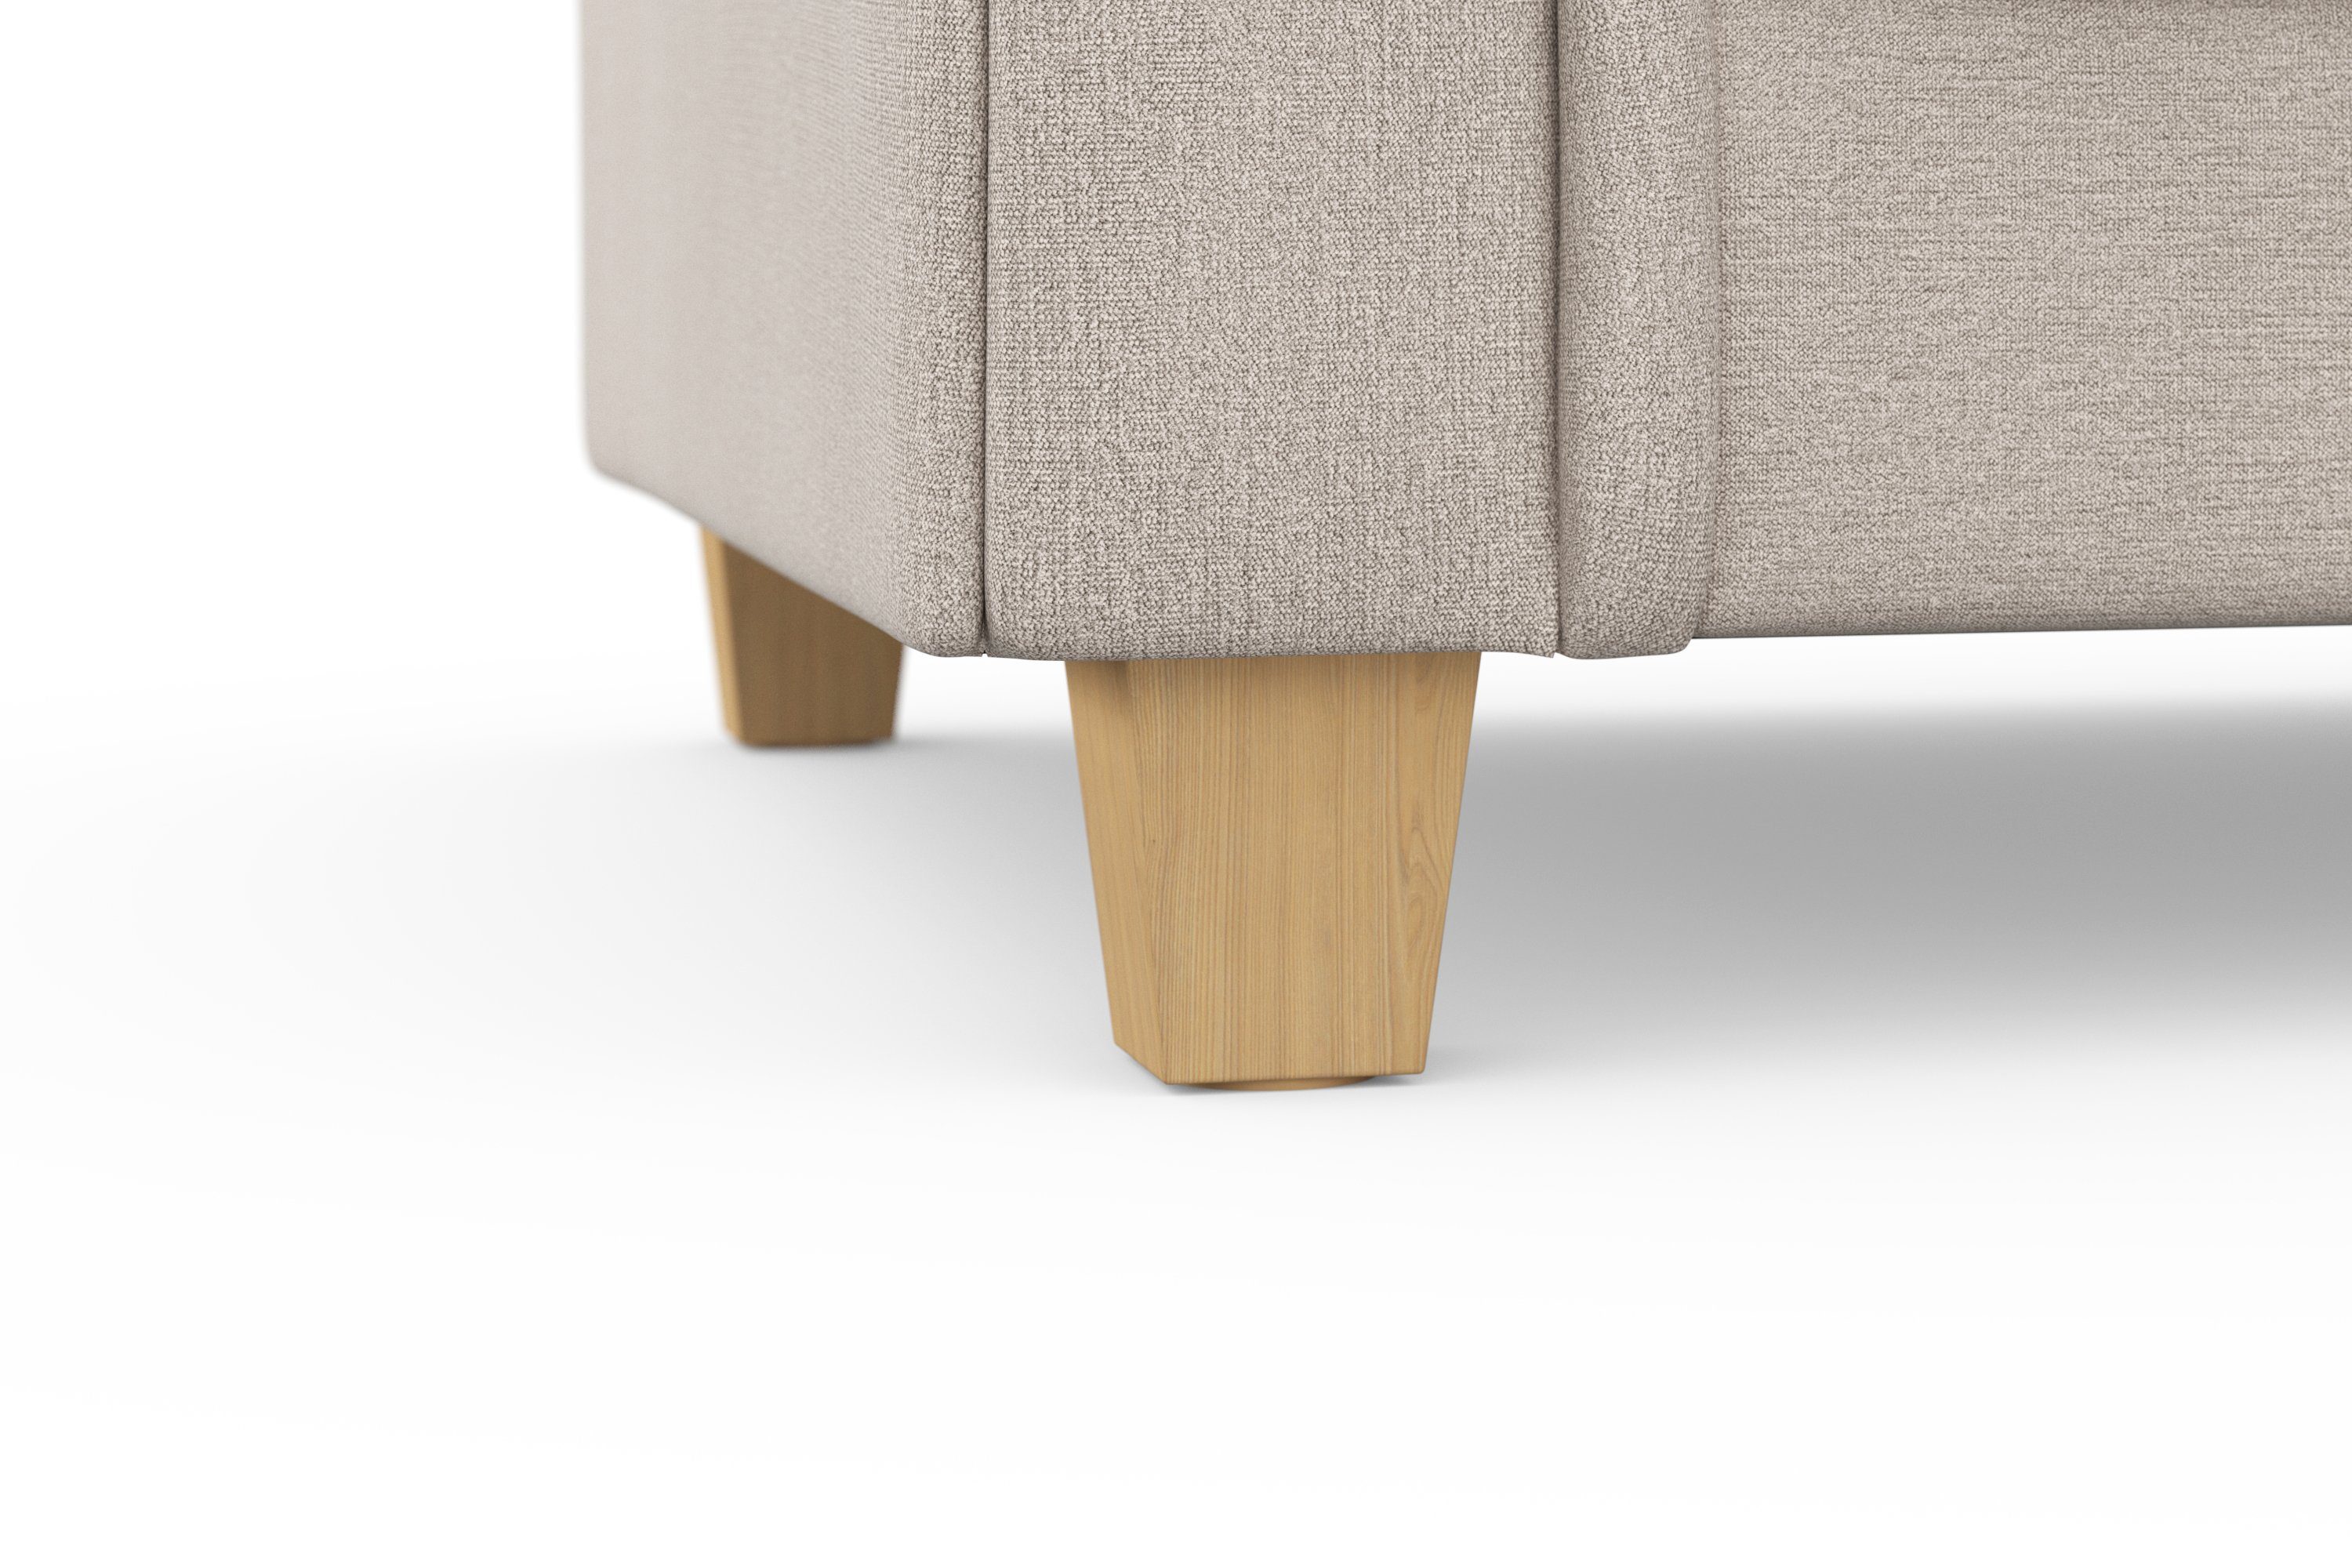 Home Megasofa, mit Design, Queenie zeitlosem und Teile, kuschelige weichem Big-Sofa Kissen affaire viele Sitzkomfort 2